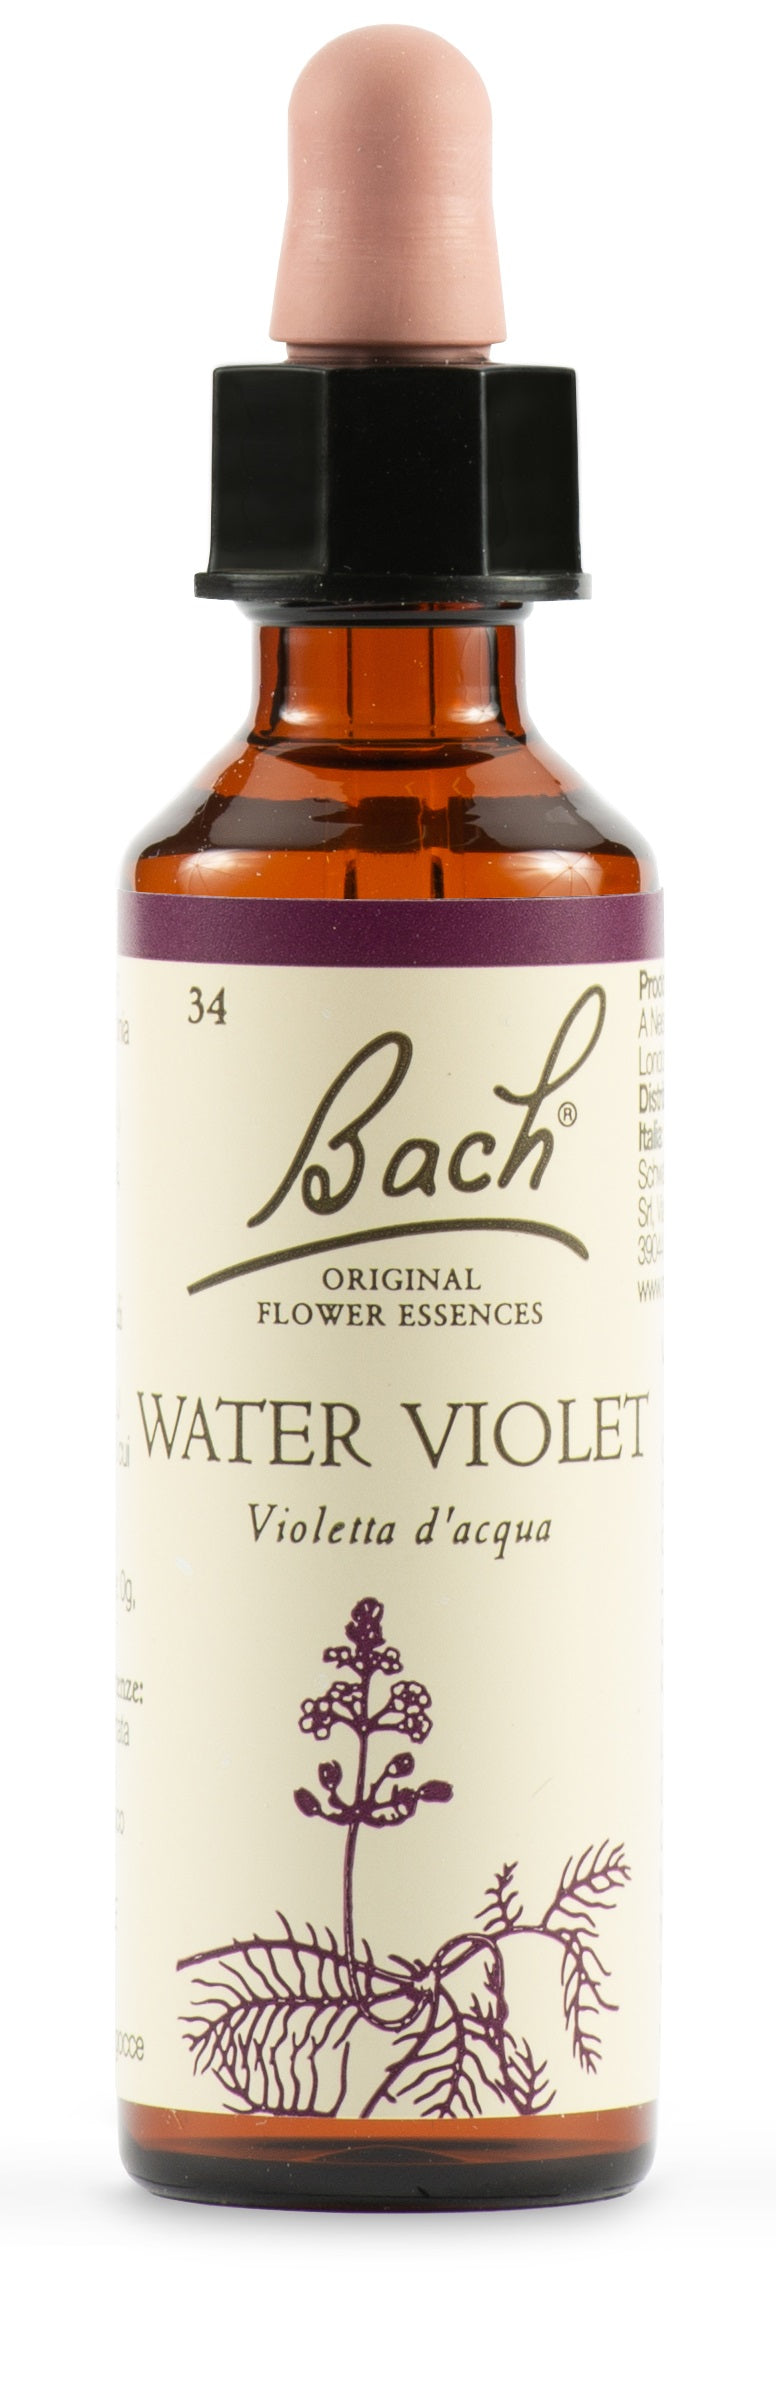 Water Viol Bach Orig 20 Ml - Water Viol Bach Orig 20 Ml